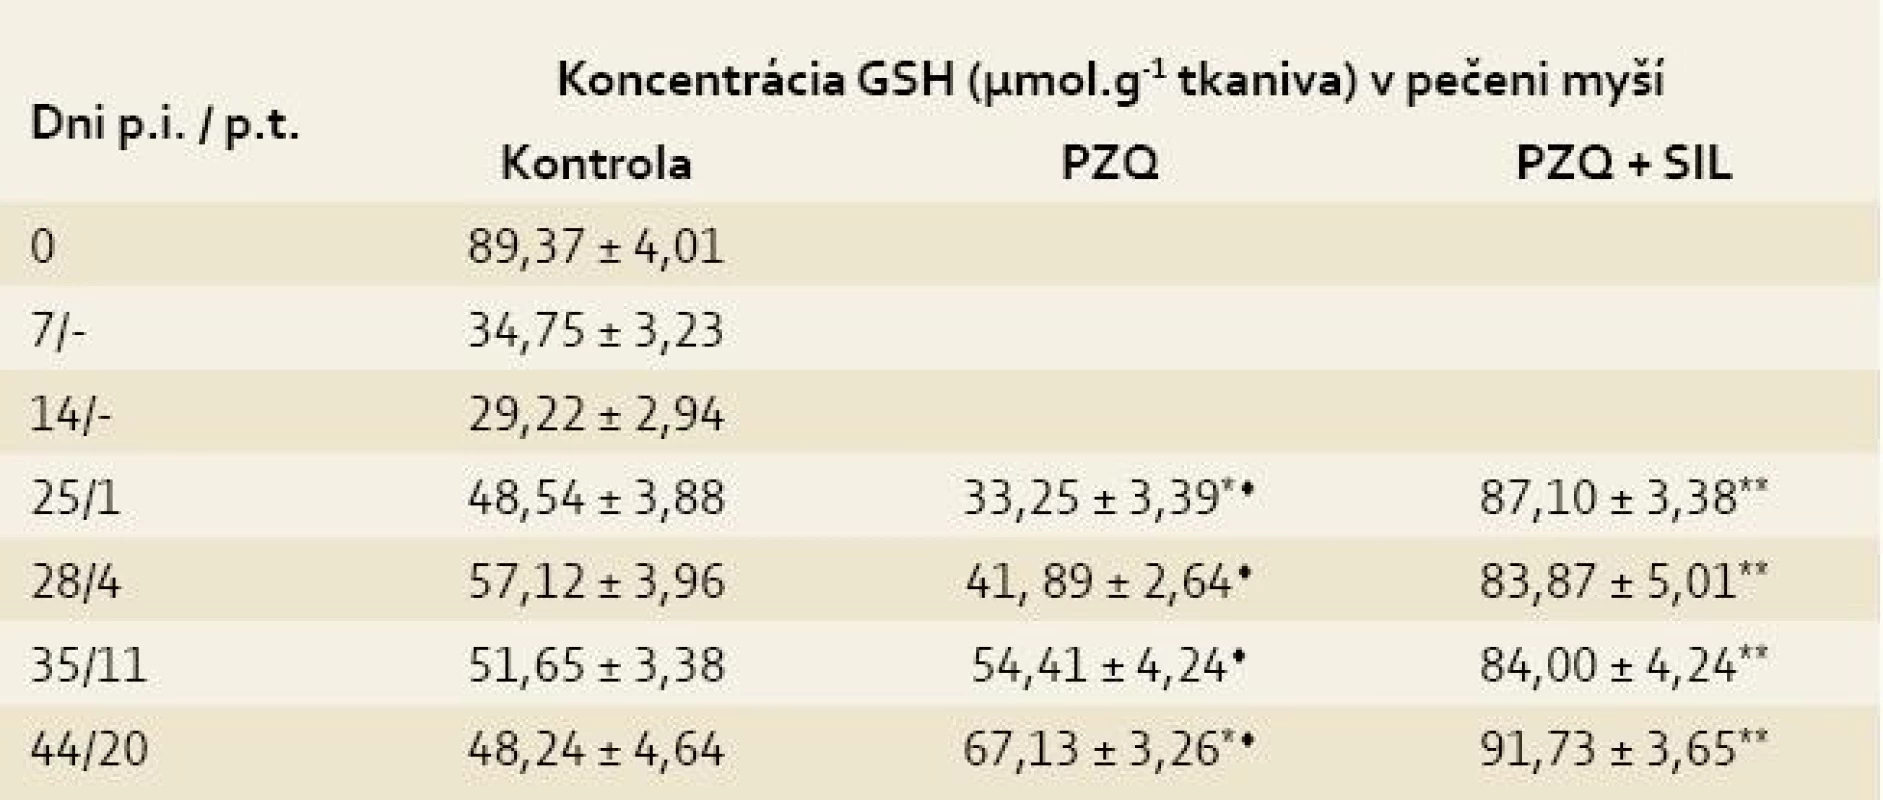 Koncentrácia glutatiónu (GSH) v pečeniach myší infikovaných larvami <i>Mesocestoides vogae</i>, neliečených a liečených praziquantelom (PZQ) samotným alebo v kombinácii so silymarínom (SIL).<br>
Tab. 1. Concentration of glutathione (GSH) in the livers of mice infected with <i>Mesocestoides vogae</i> larvae, untreated and treated with praziquantel (PZQ) alone and in combination with silymarin (SIL).